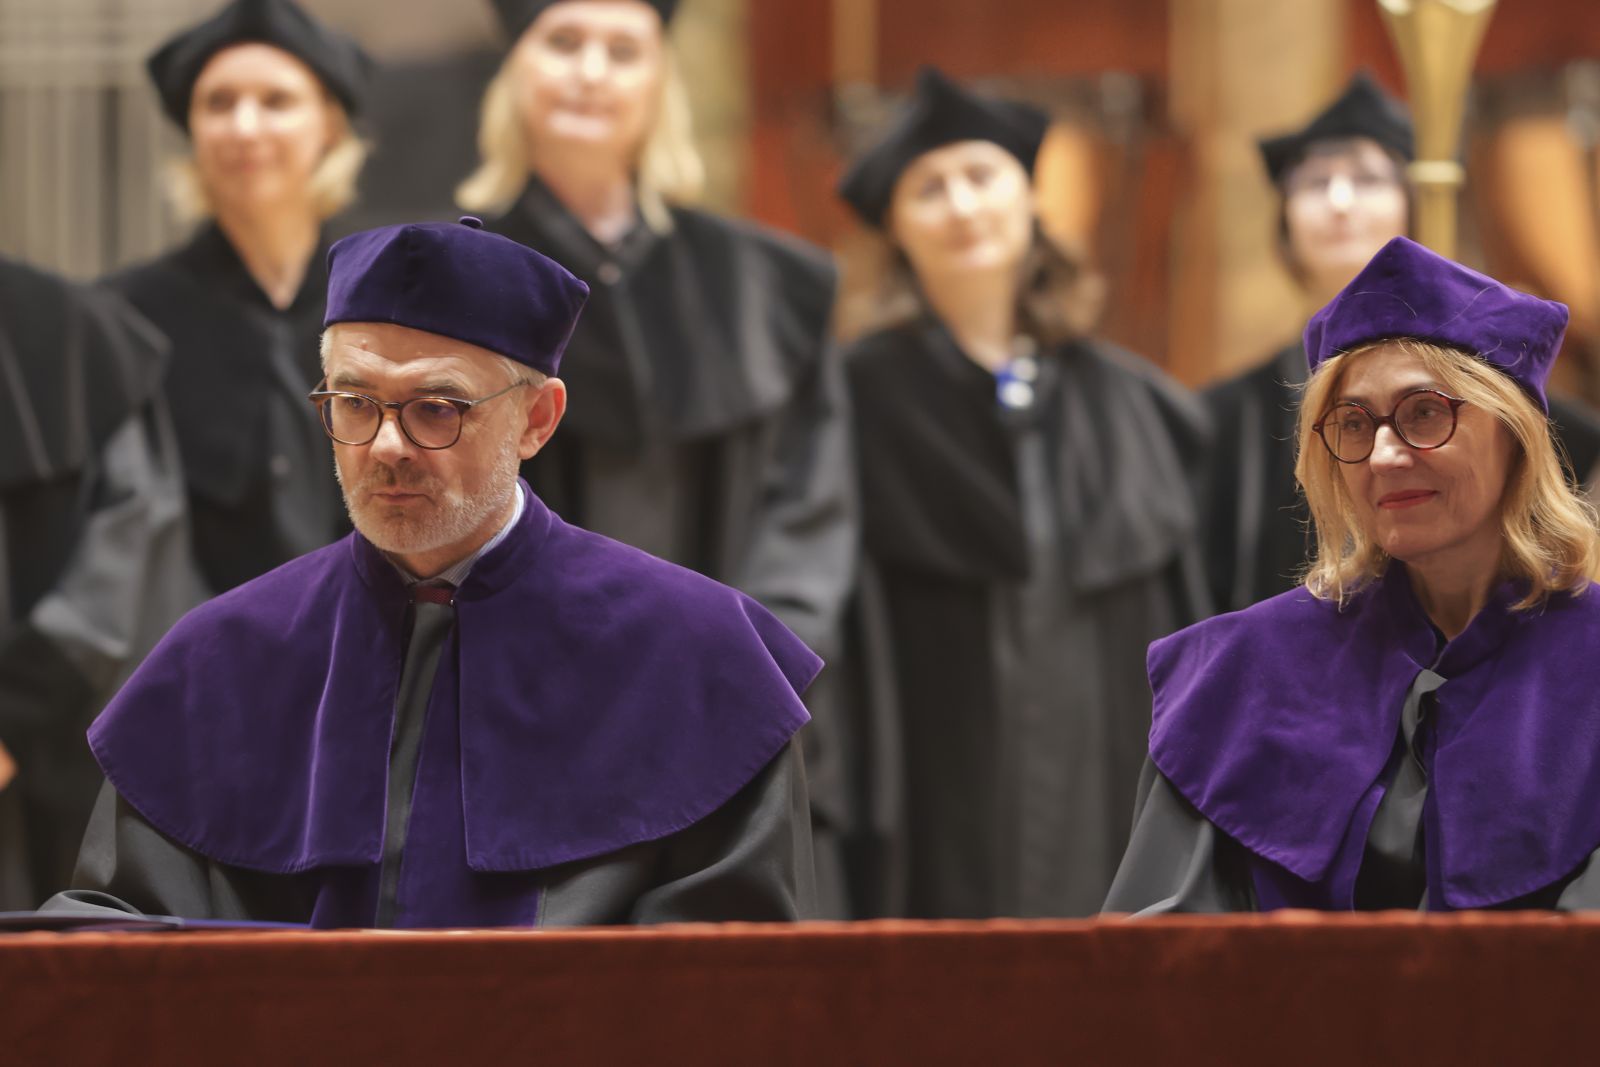 Prof. Jerzy Borowczyk i prof. Krystyna Pieniążek-Marković siedzą za stołem prezydialnym, oboje ubrani w fioletowe togi i czapki, za nimi stoją osoby w czarnych togach.